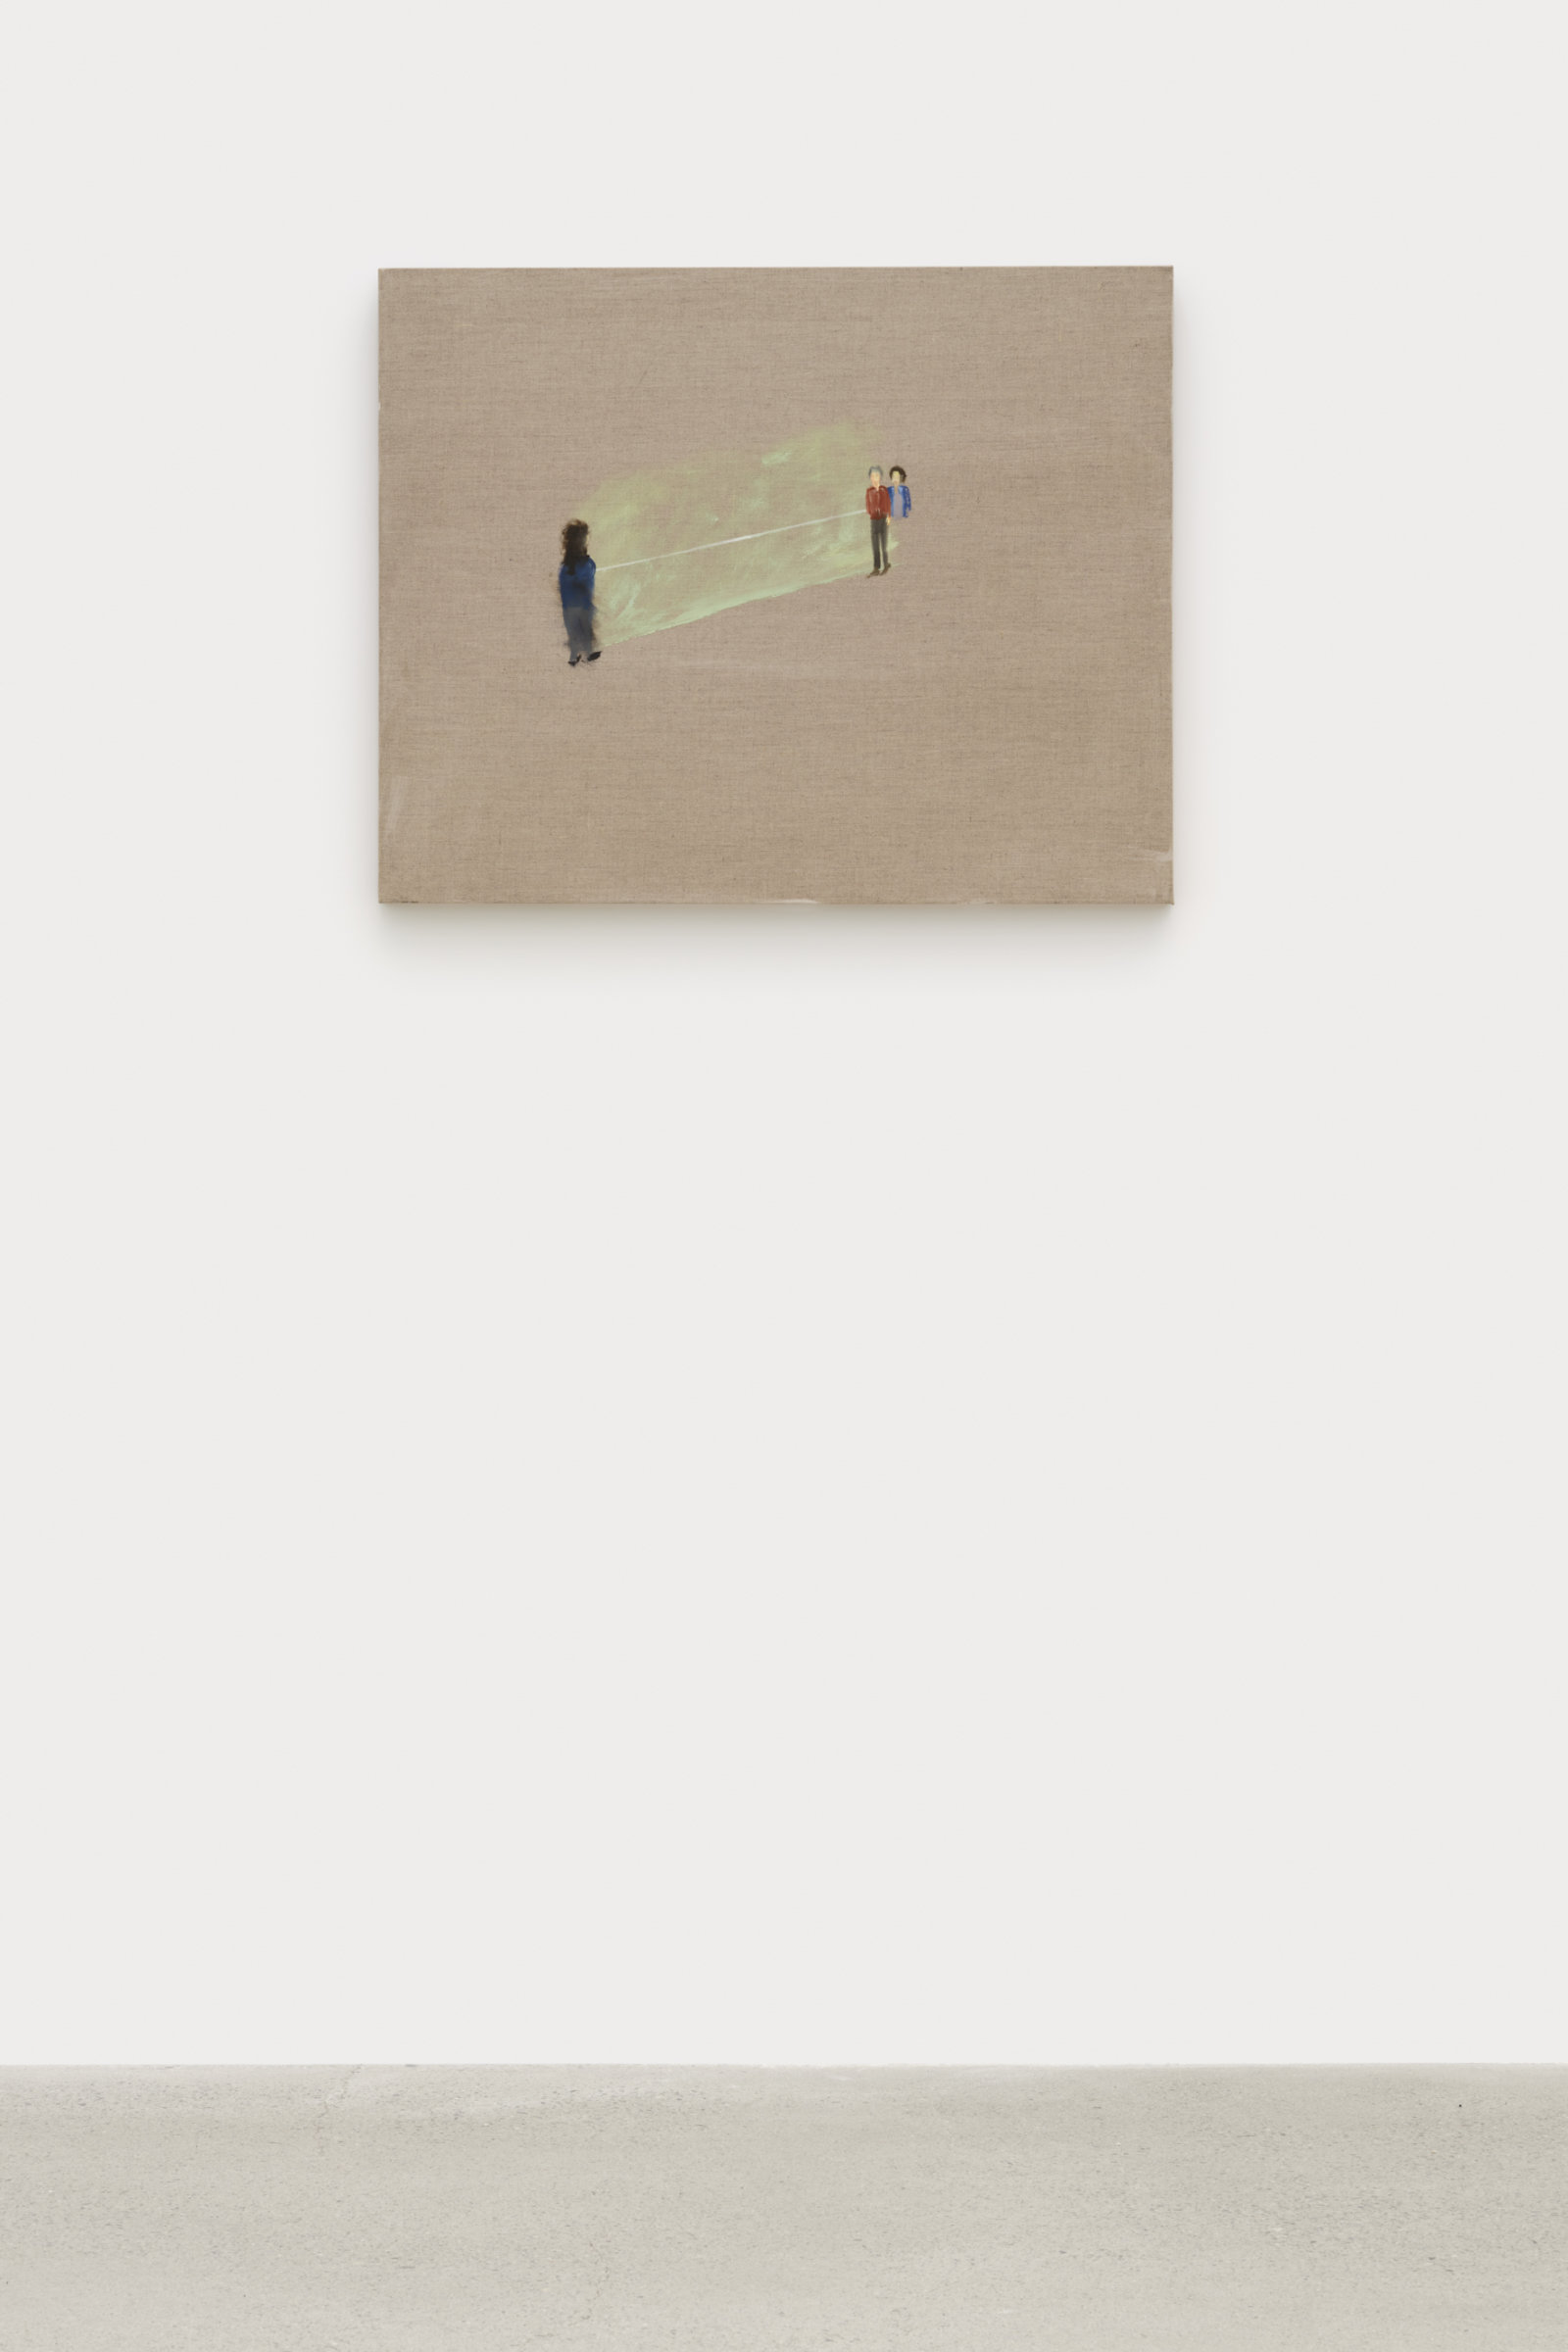 Brenda Draney, Hospital, 2011, oil on linen, 24 x 30 in. (61 x 76 cm)